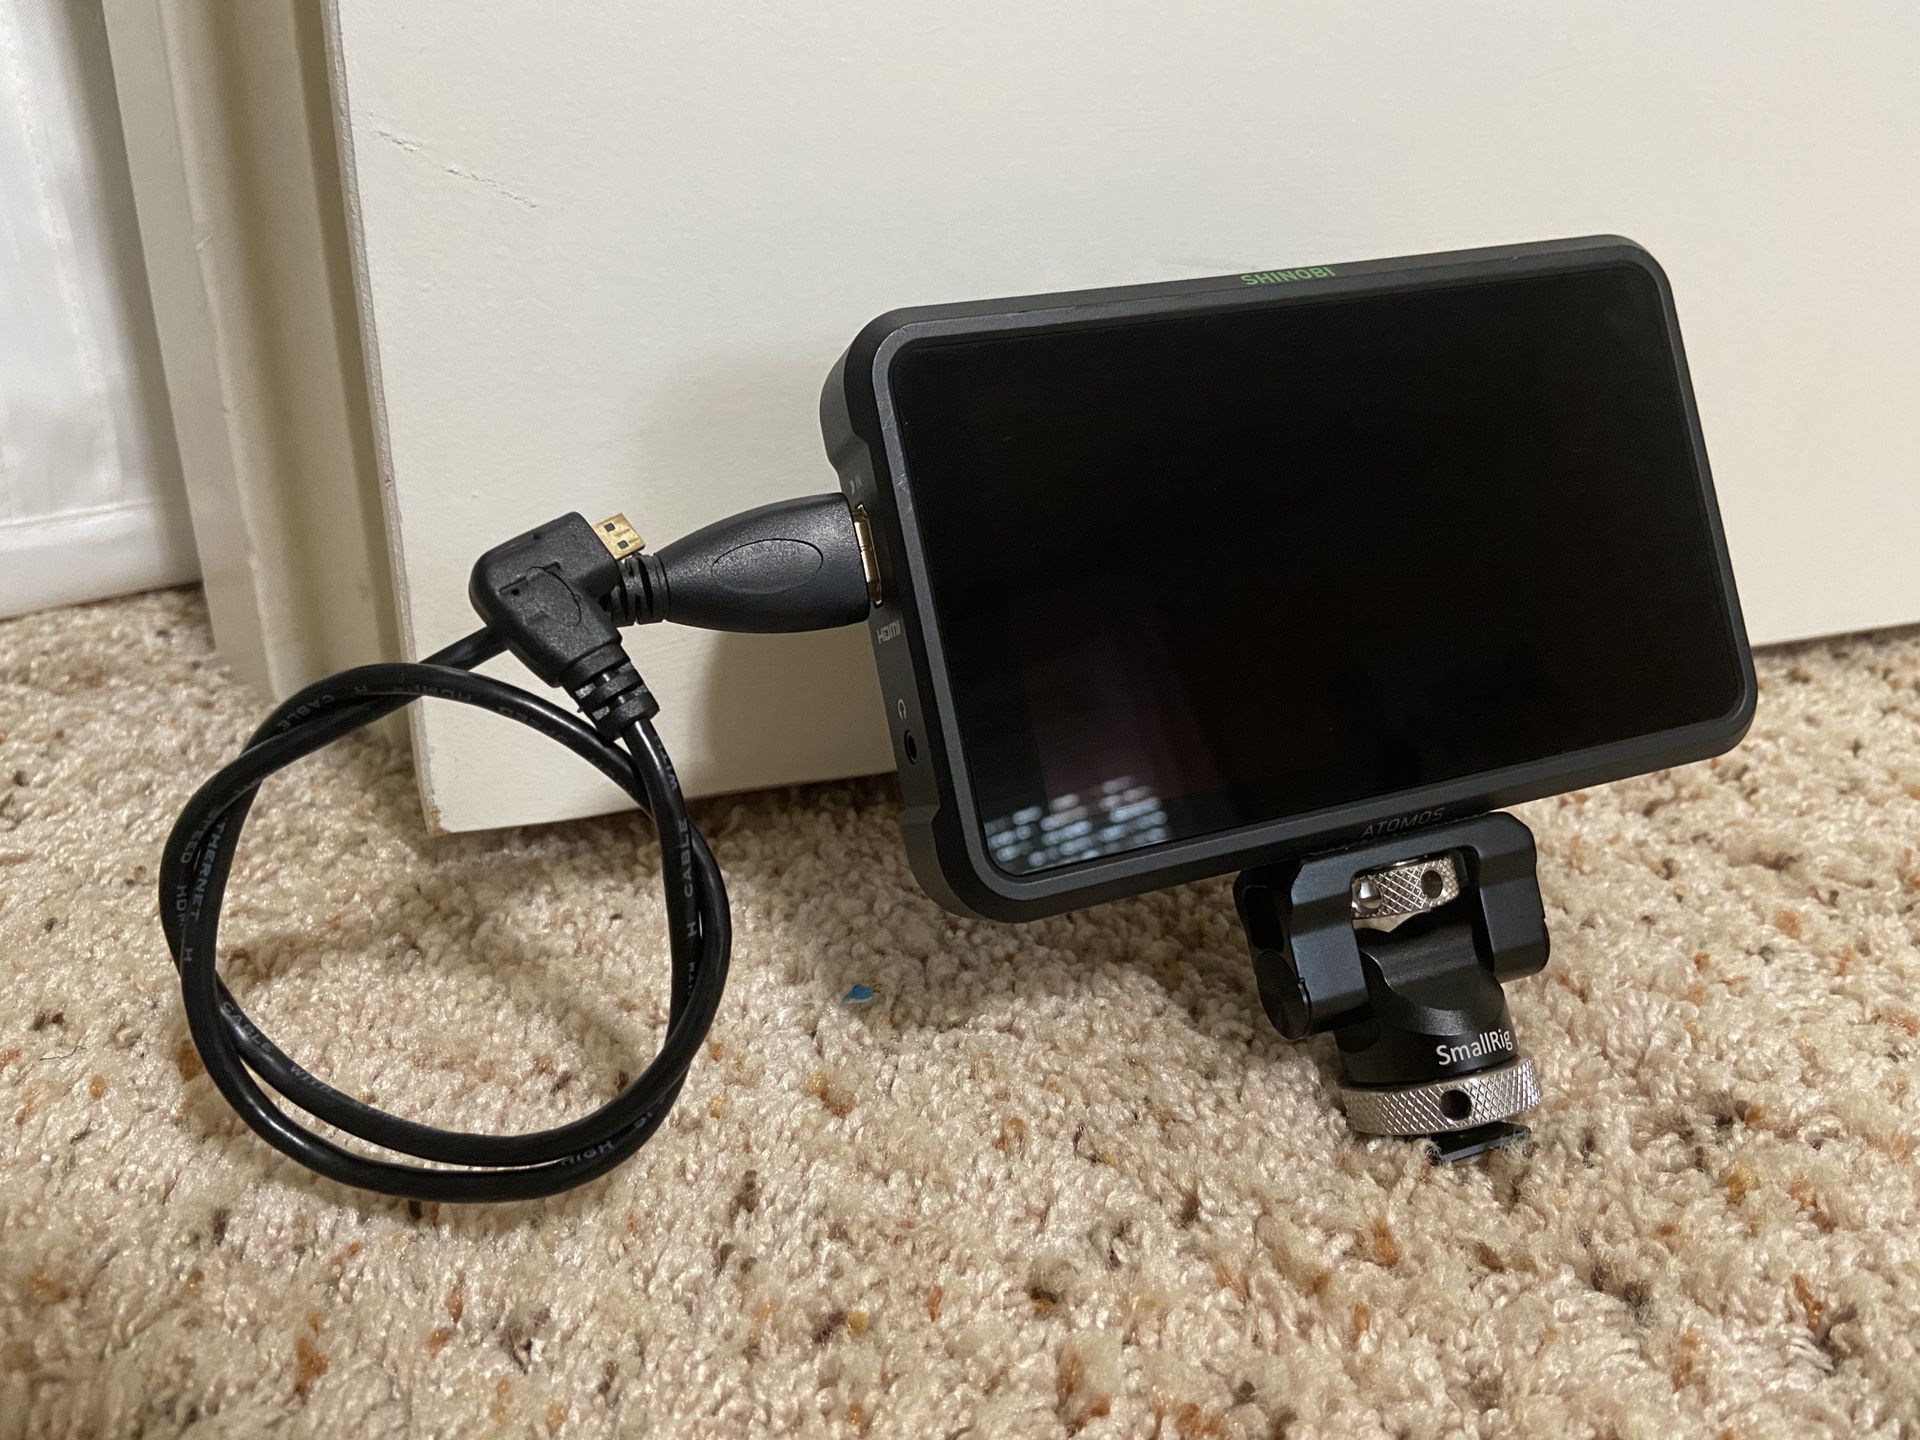 Atomos Shinobi 5.2” Camera monitor